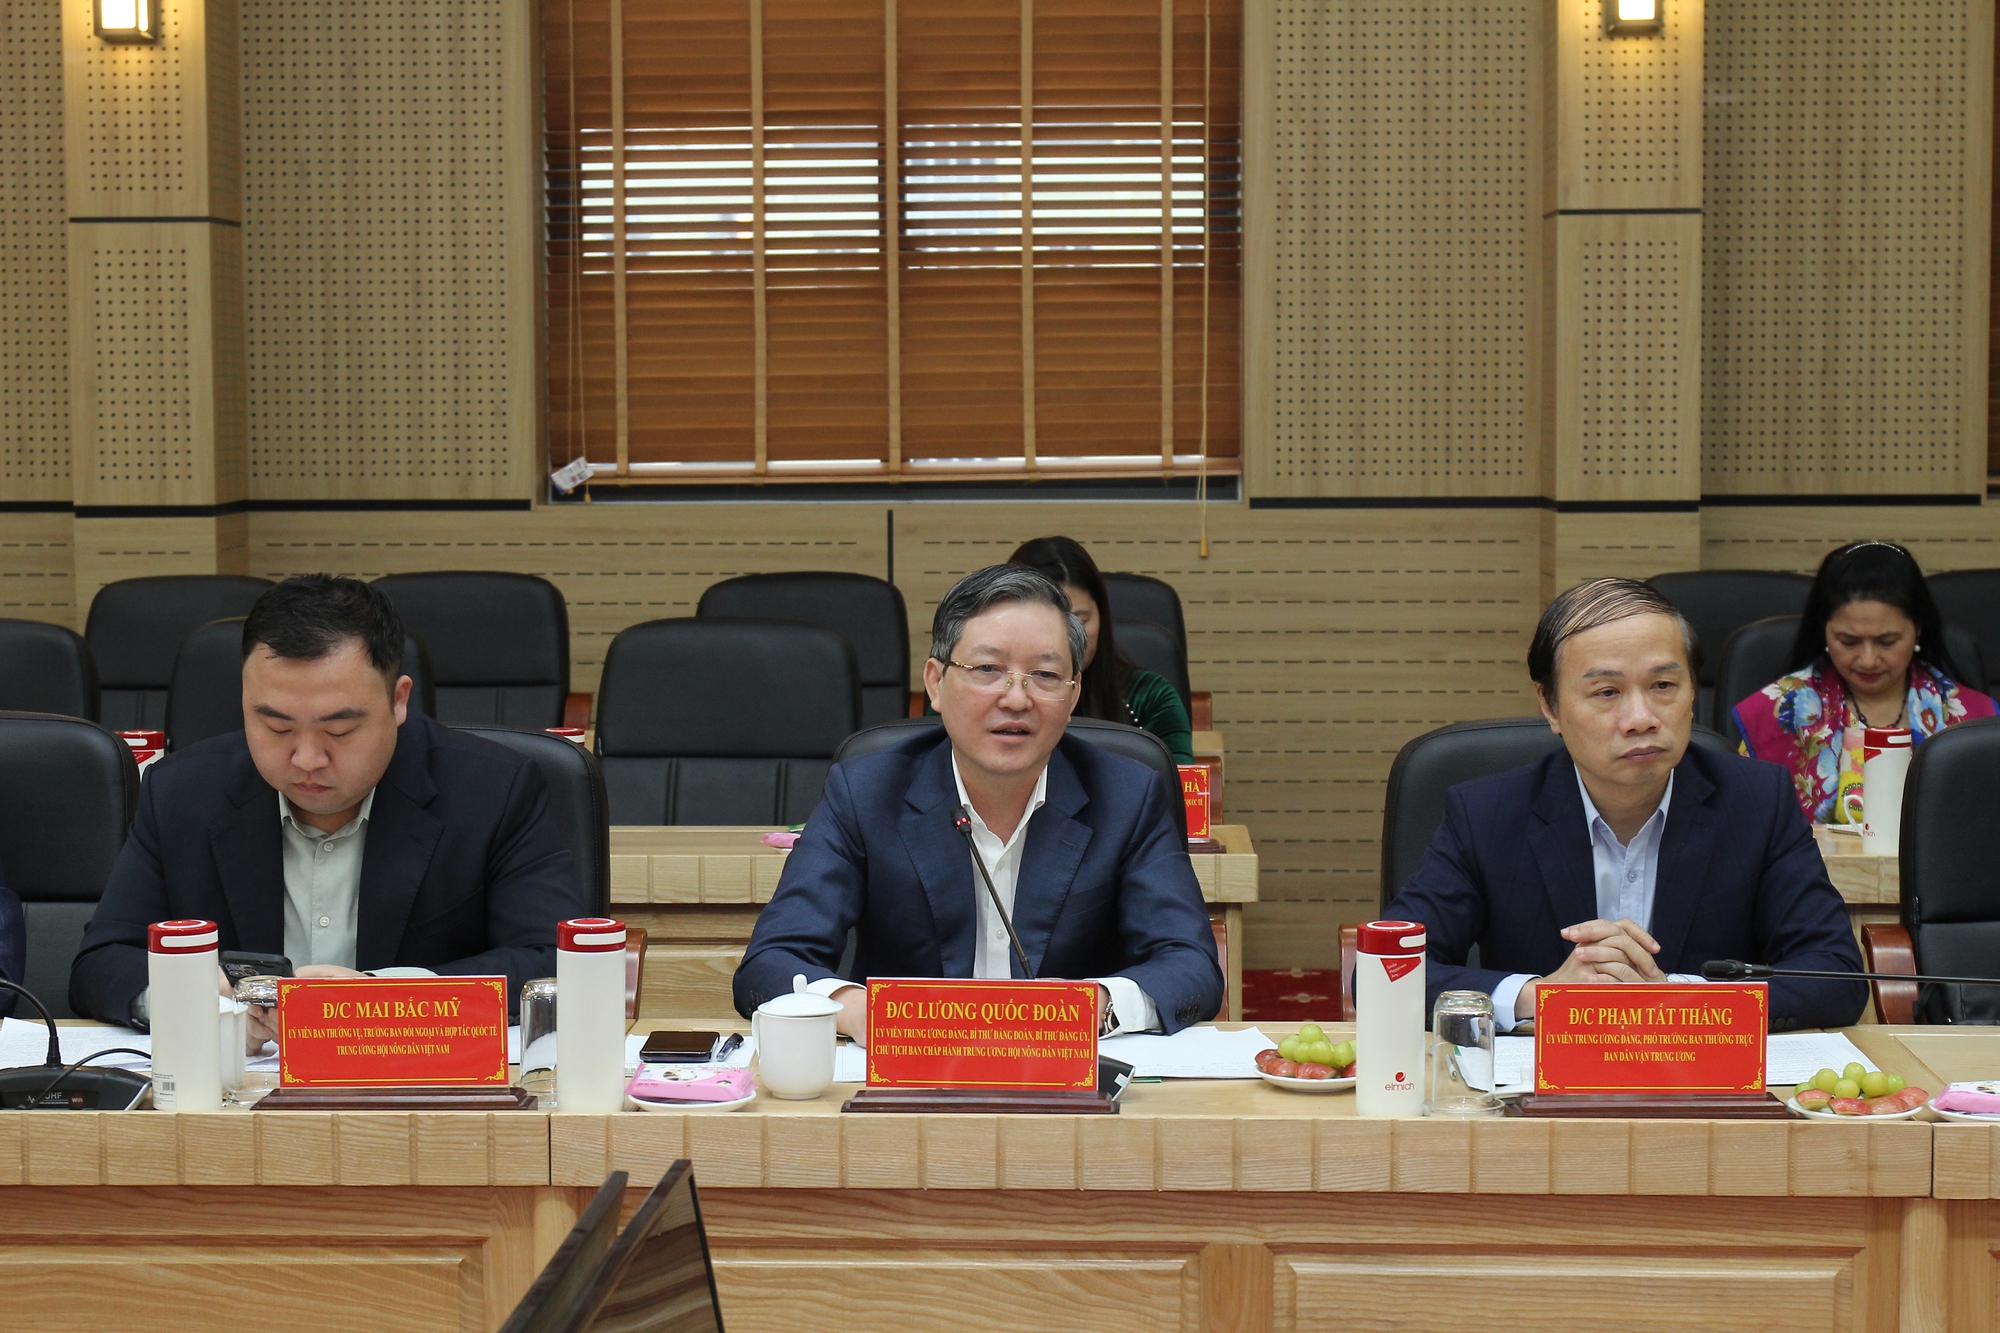 Chủ tịch Hội NDVN Lương Quốc Đoàn tiếp, làm việc với đoàn Ủy ban TƯ Mặt trận Lào xây dựng đất nước - Ảnh 2.